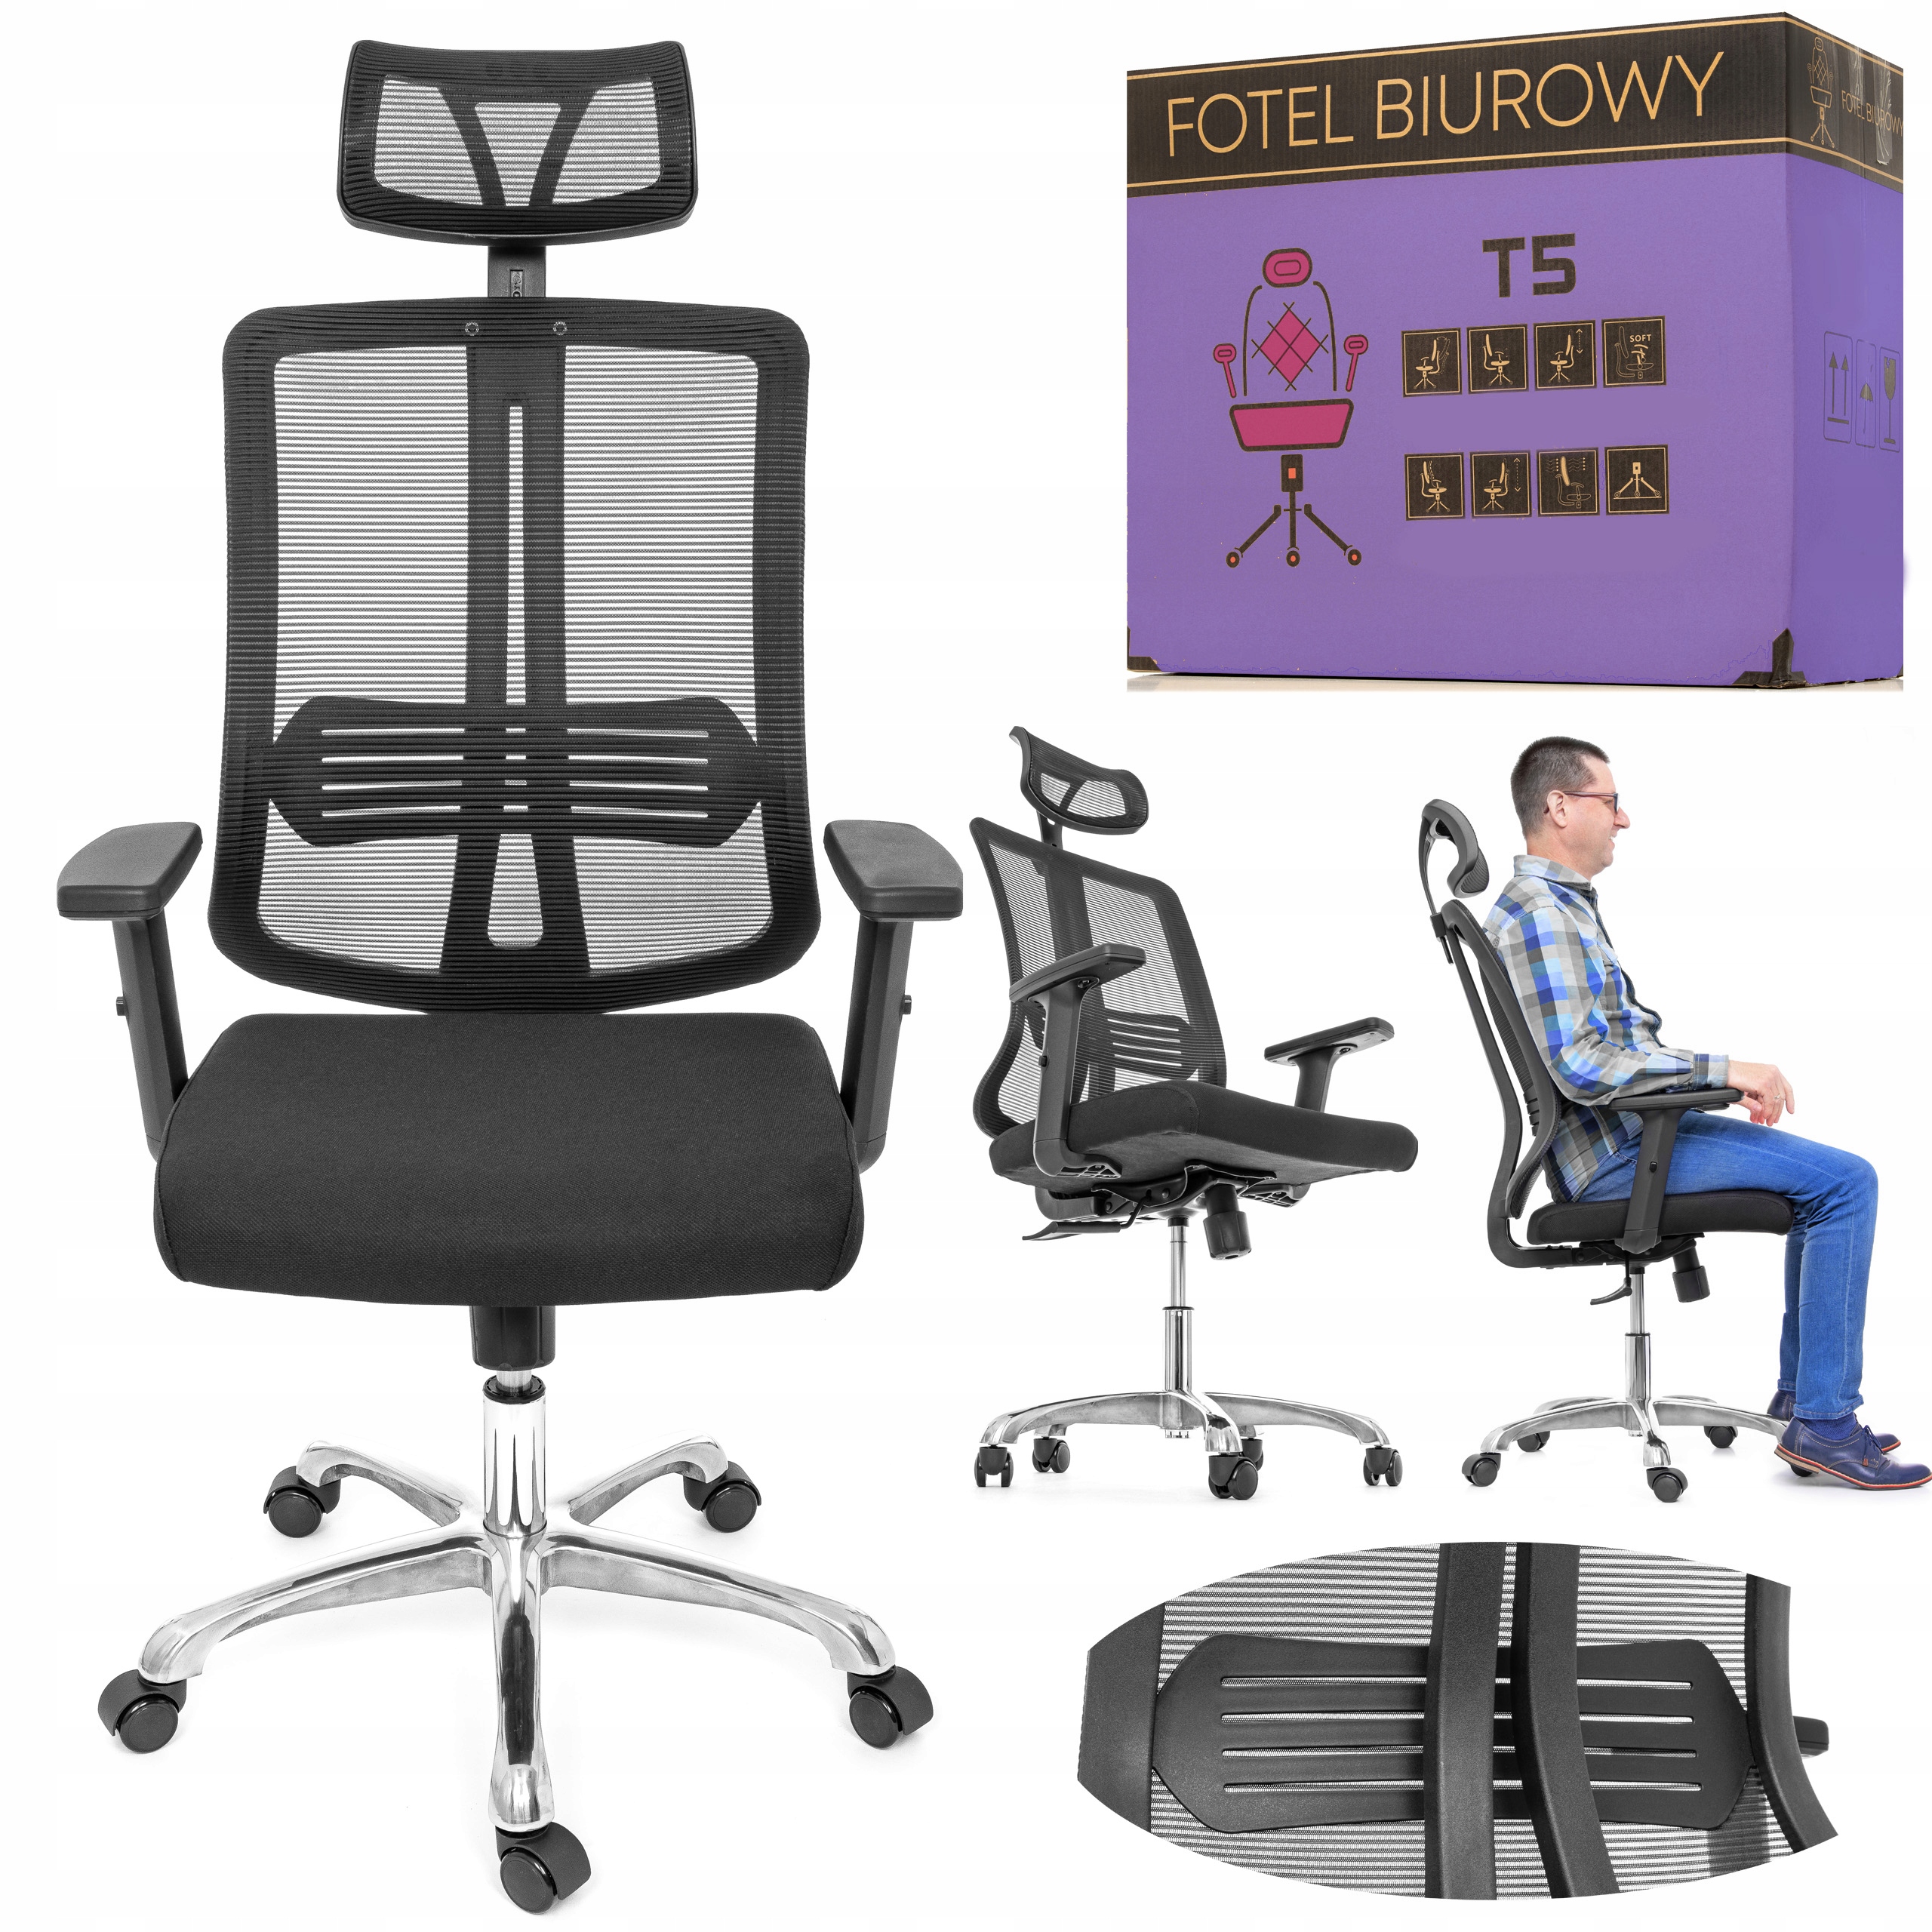 Fotel Biurowy Obrotowy Krzeslo Gracza Siatka Chrom Sklep Komputerowy Allegro Pl